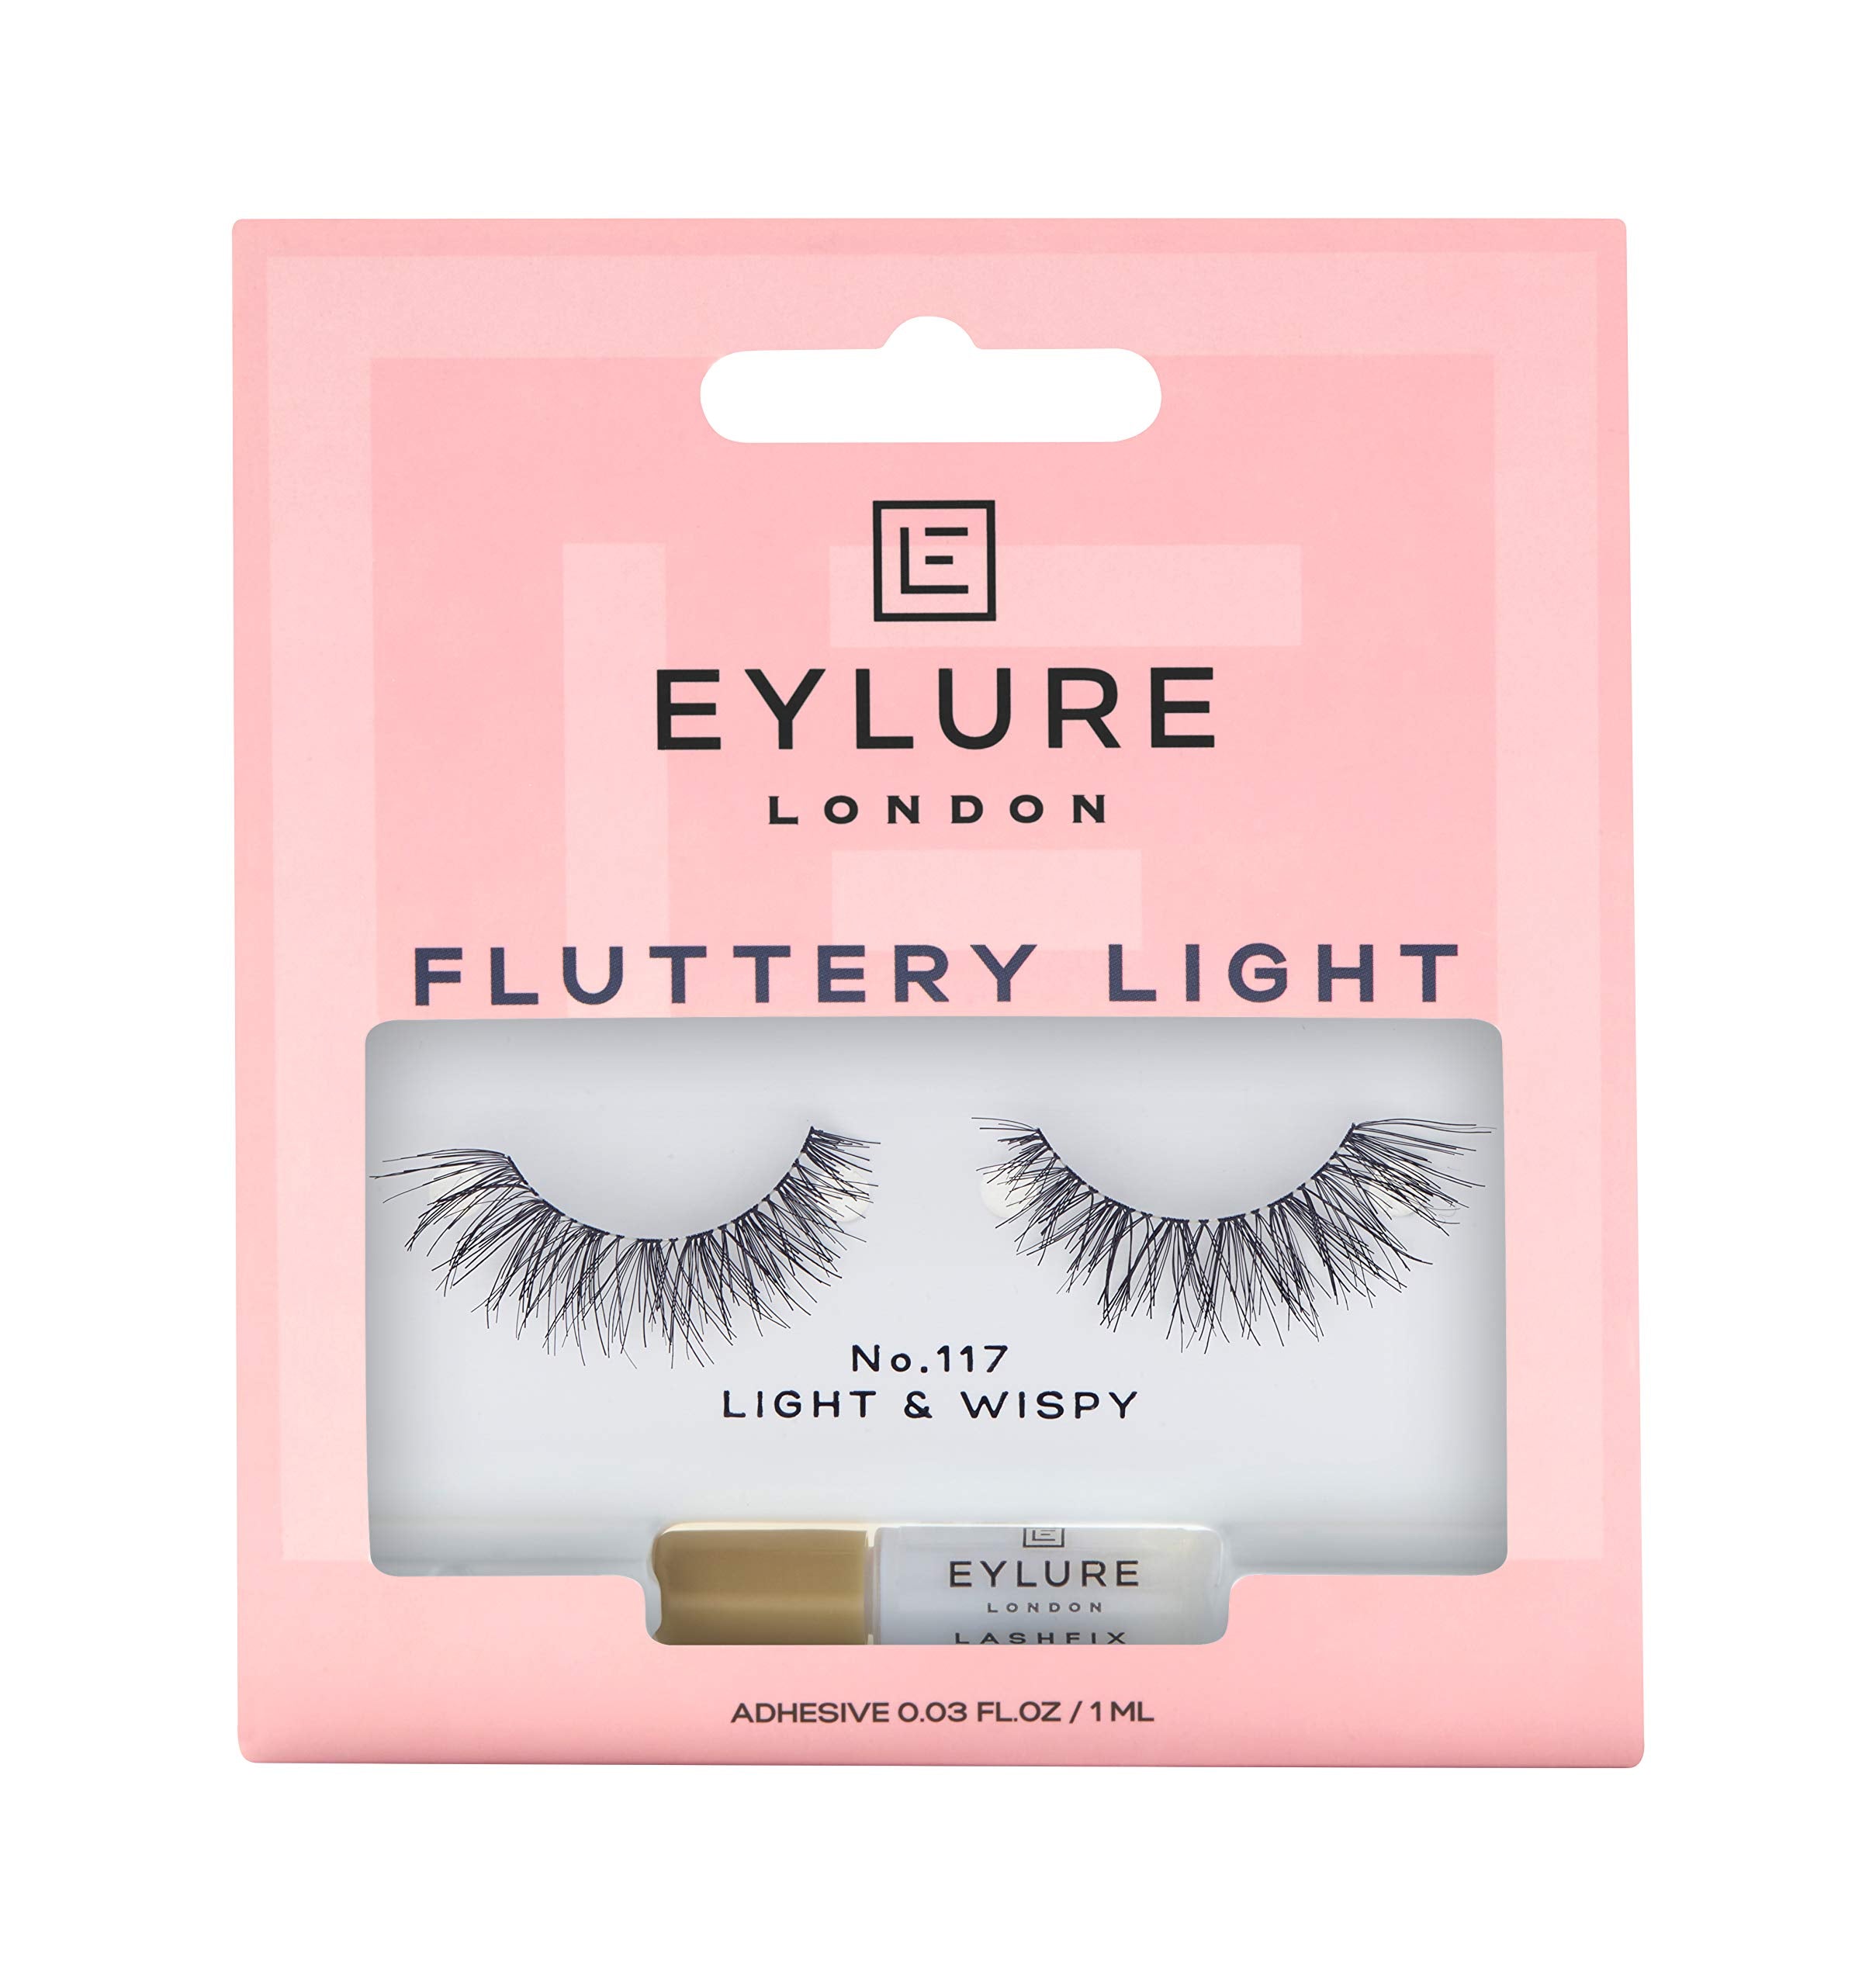 Claire's Eylure Fluttery Light No. 117 False Lashes